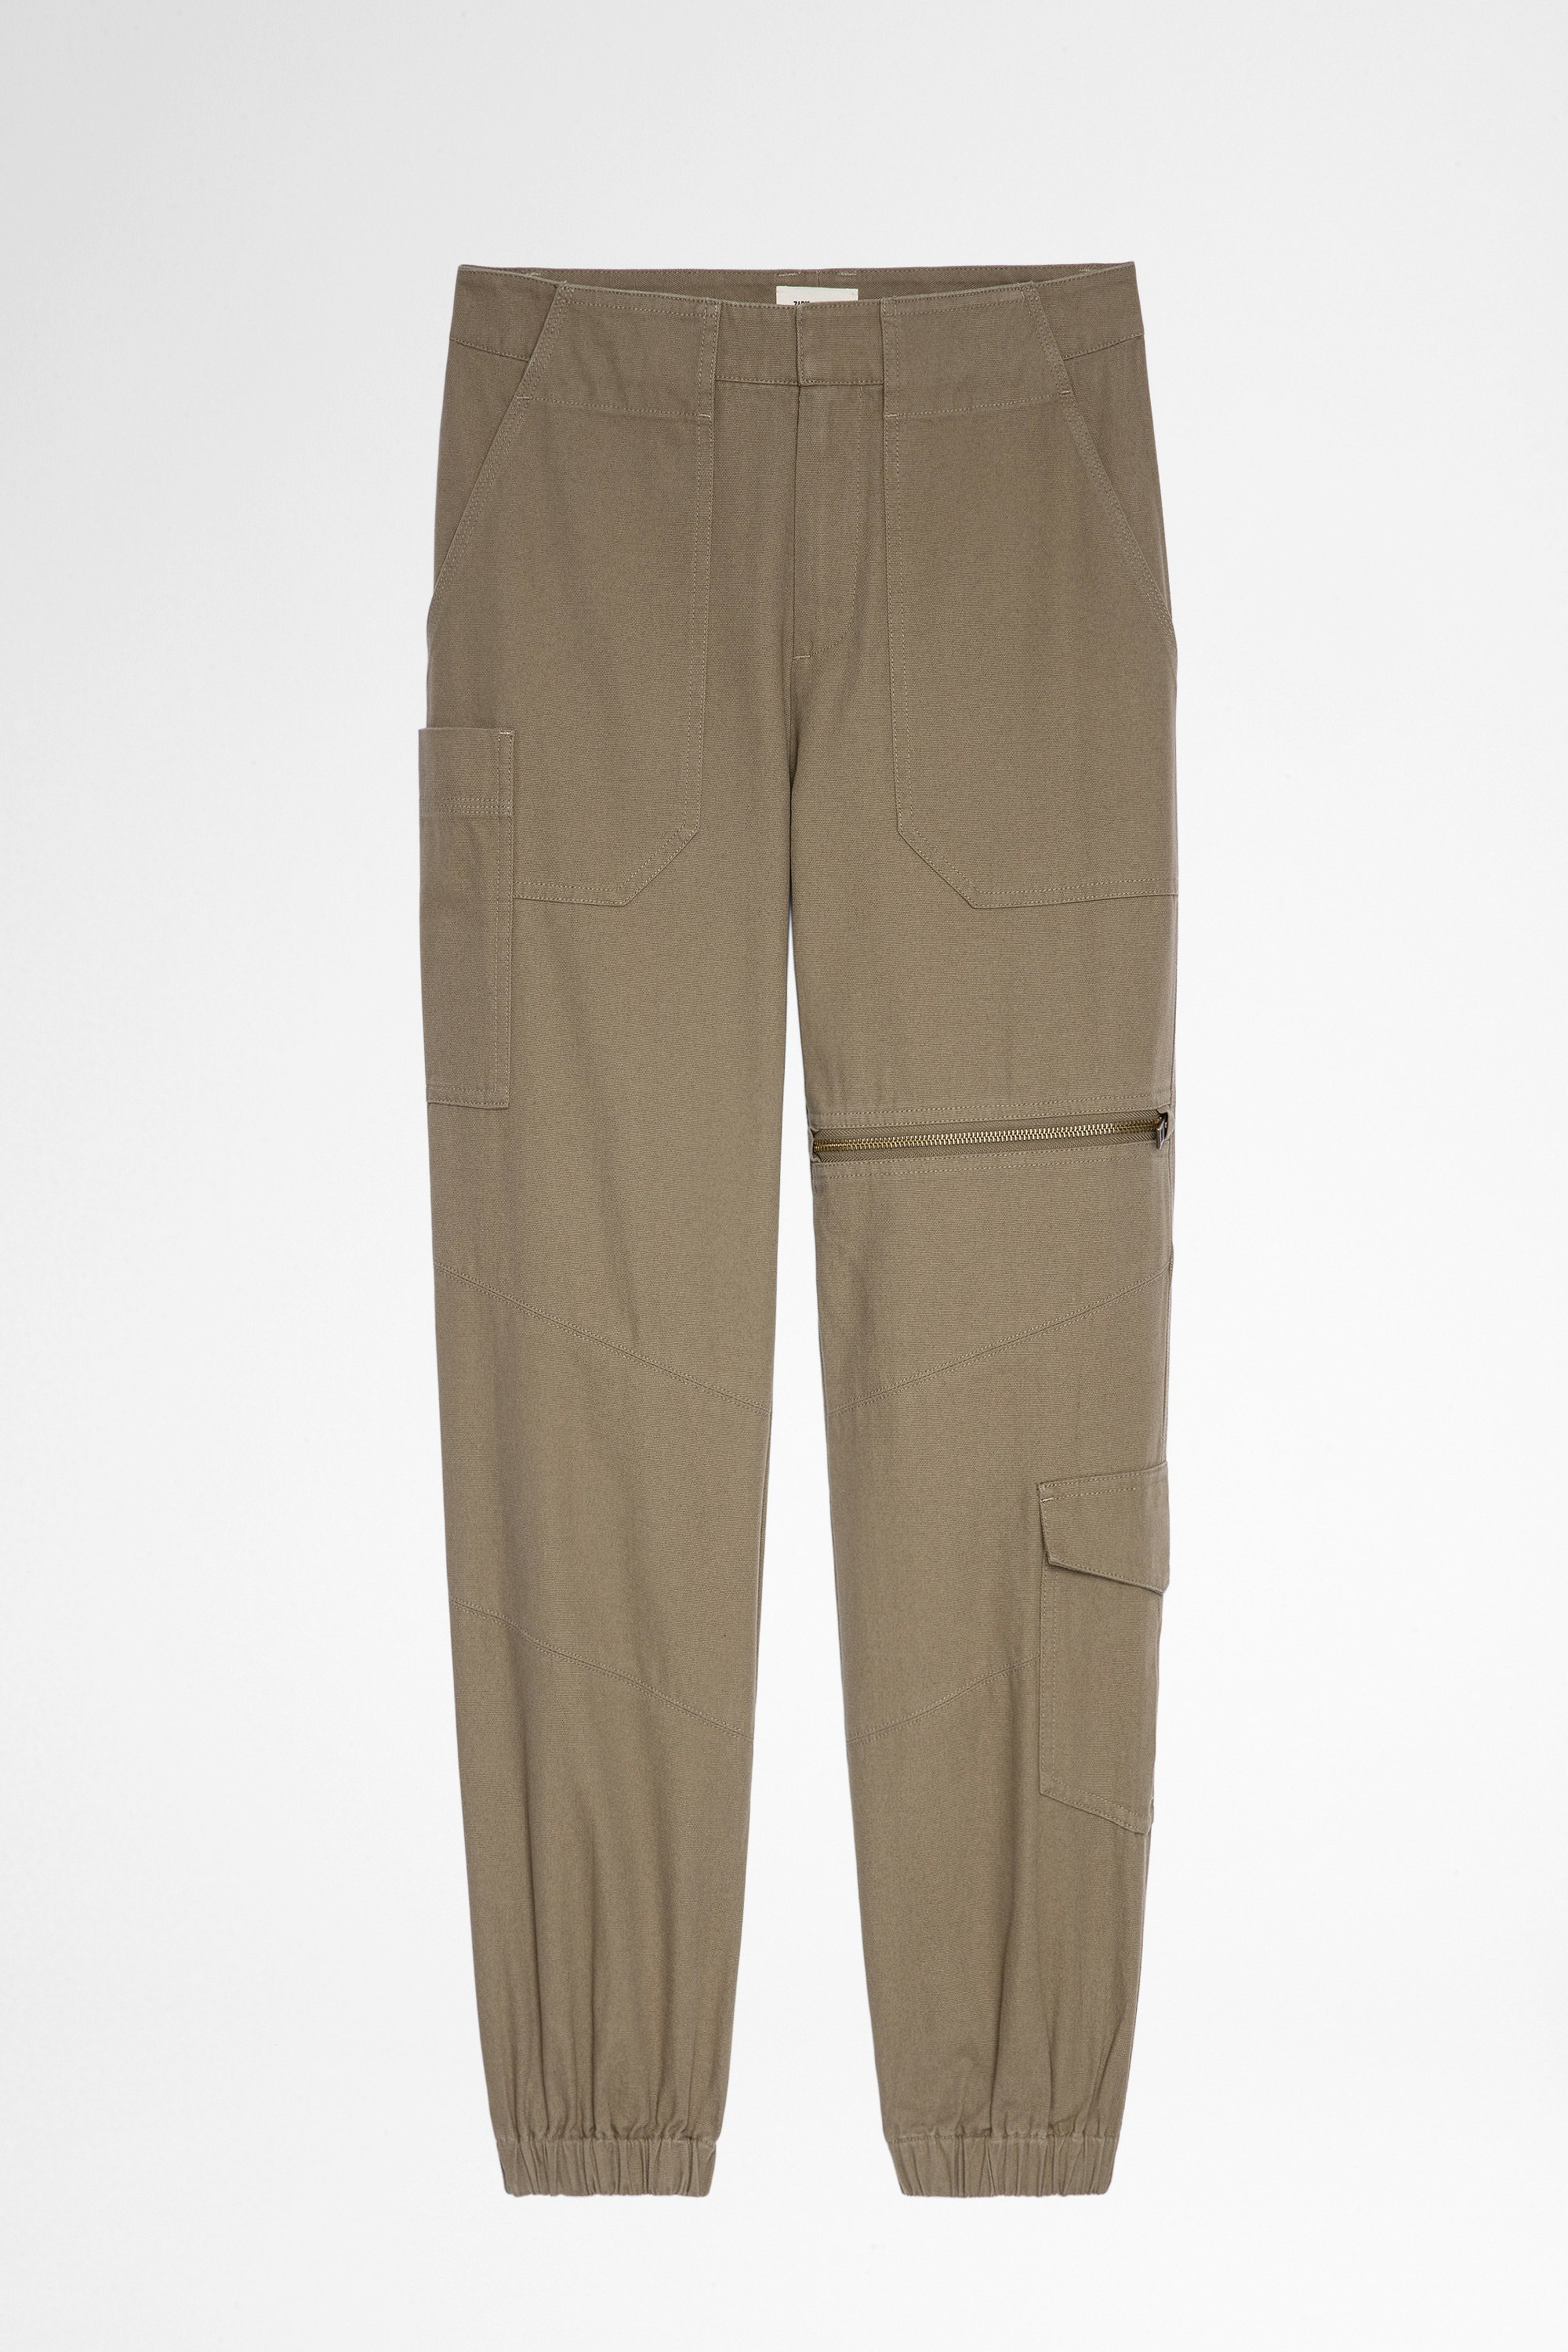 Pantaloni Poder Pantaloni militari color kaki, donna. Reallizzato con fibre da agricoltura biologica